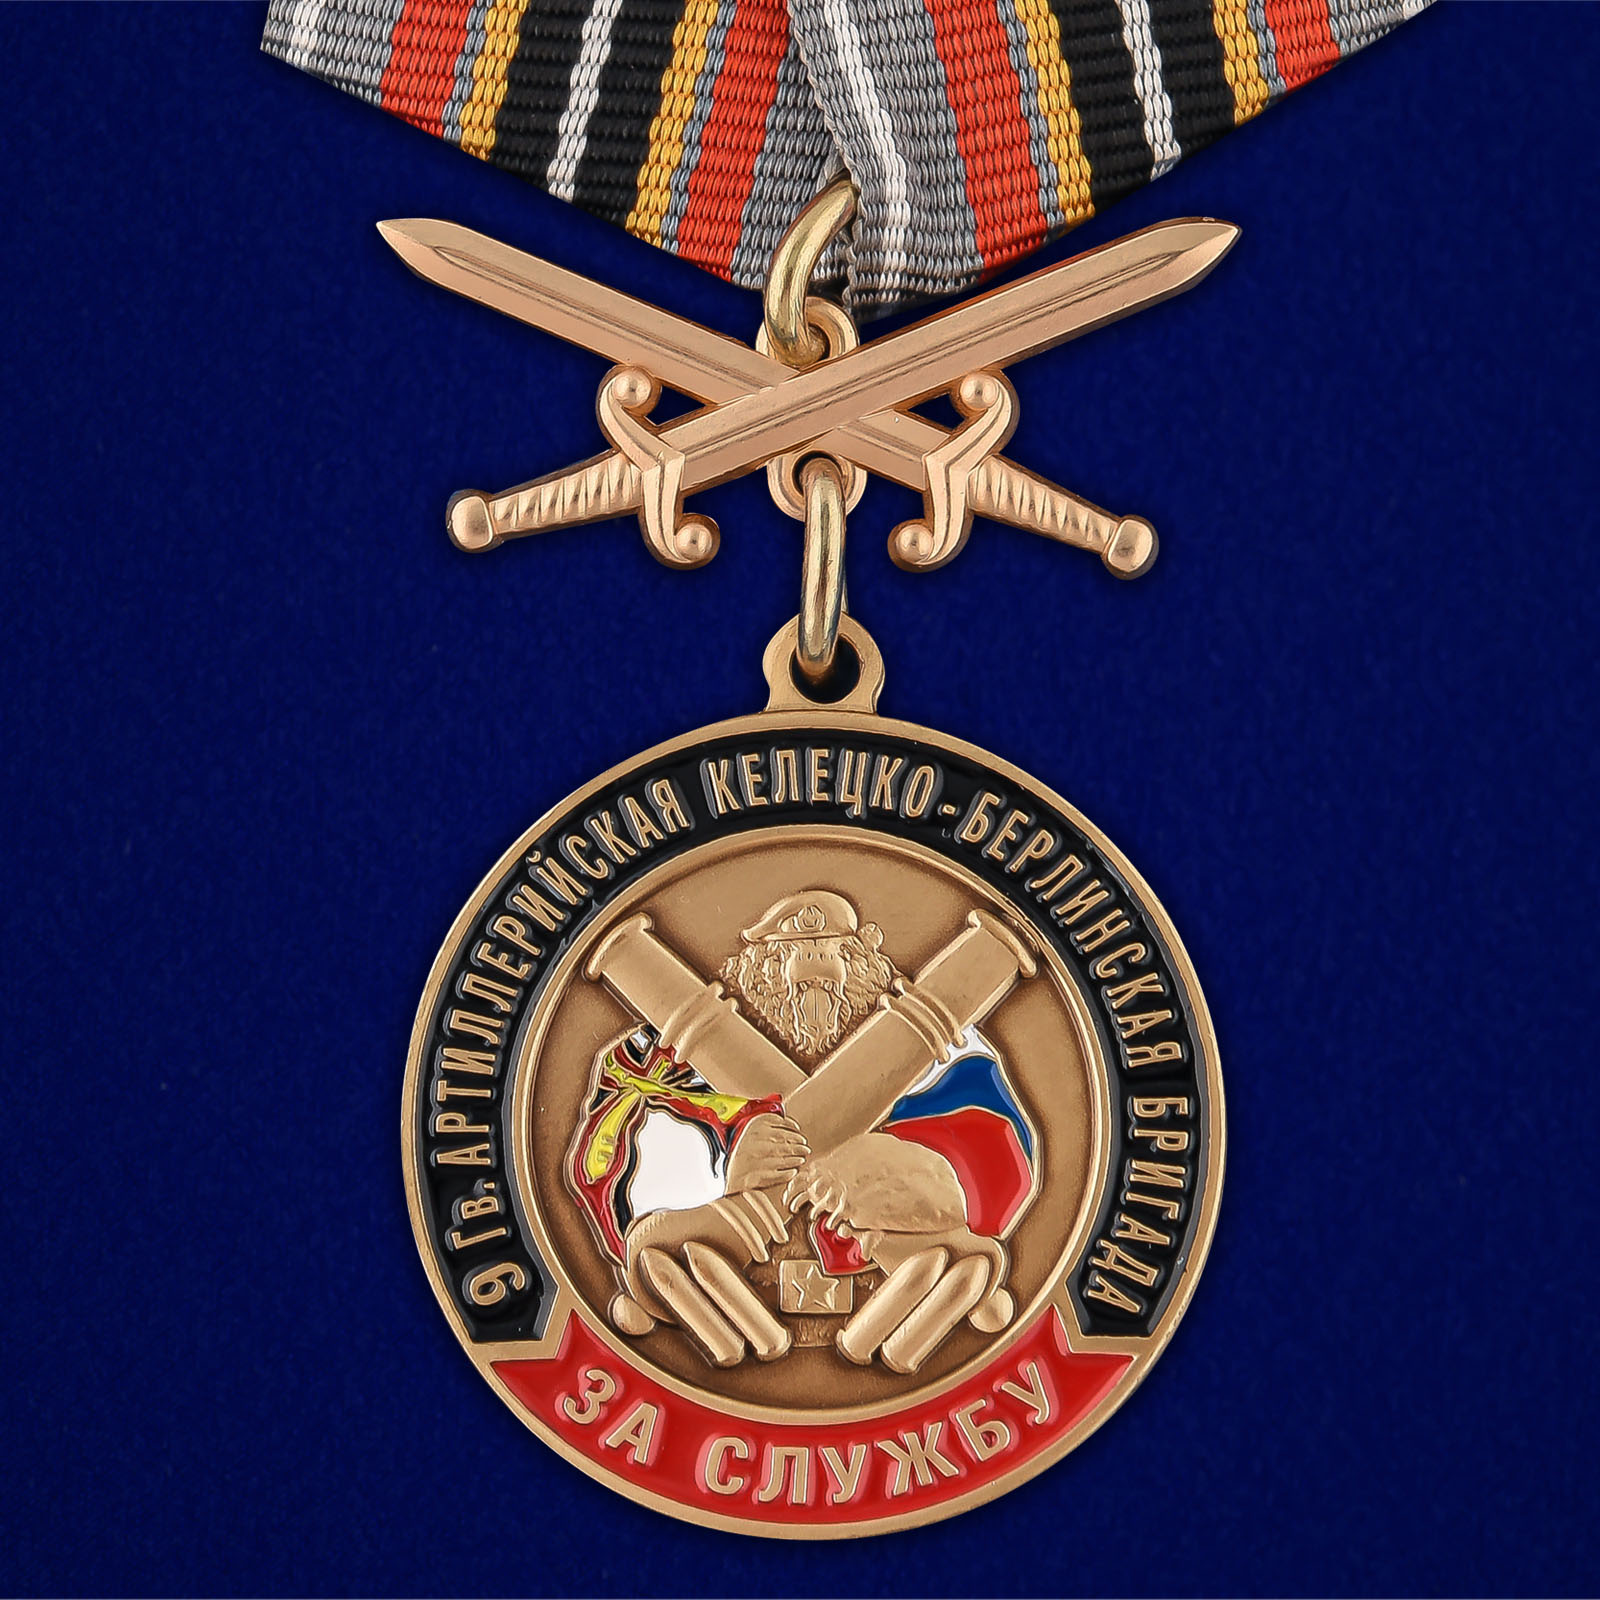 Купить медаль РВиА "За службу в 9-ой артиллерийской бригаде онлайн